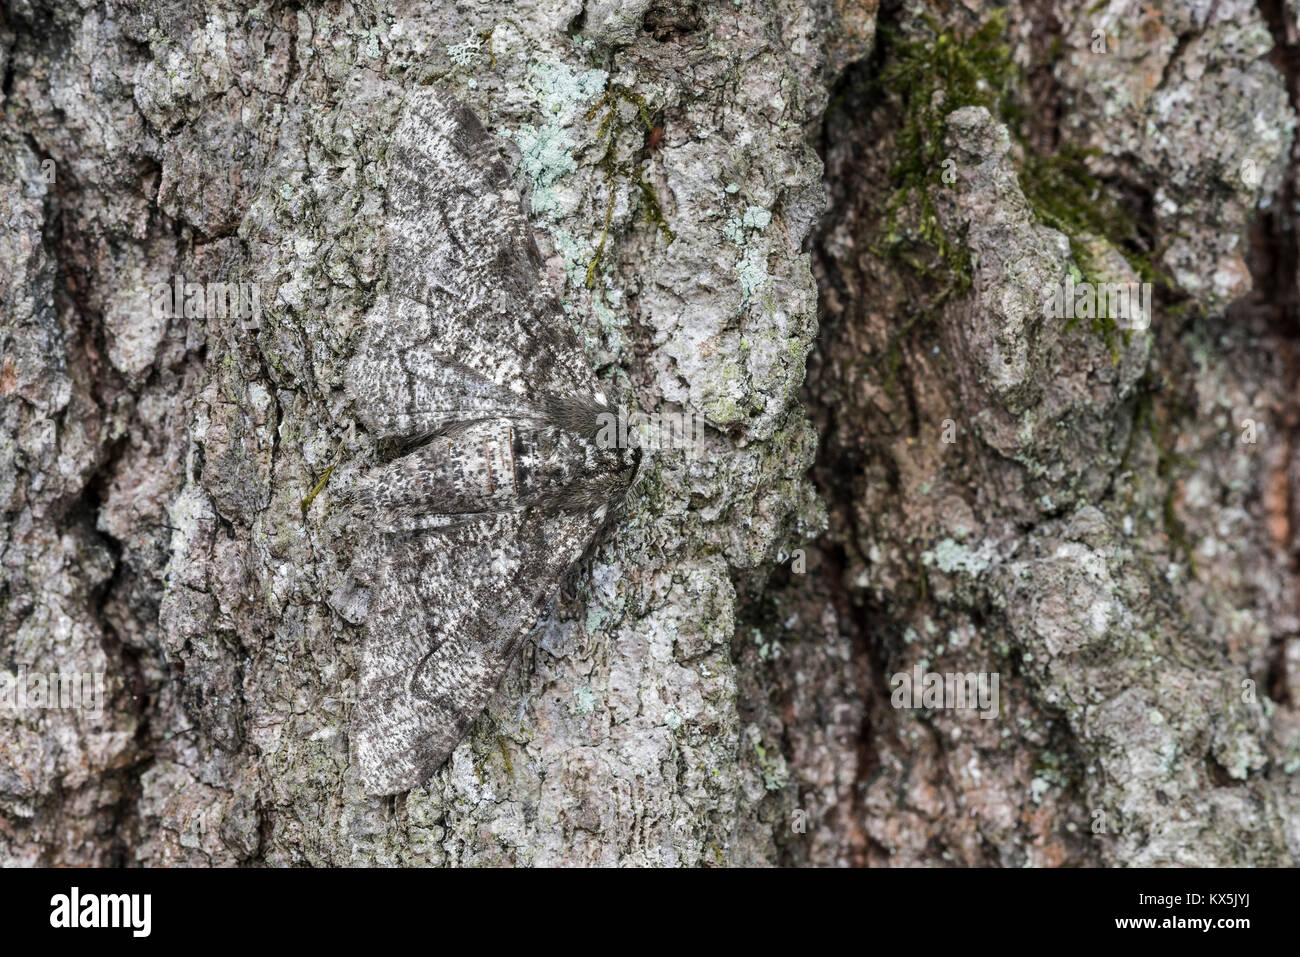 Pfeffer und Salz Geometer Motte auf Eichenrinde getarnt. Cove Berg (TNC) Bewahren, Perry County, Pennsylvania, Frühling. Stockfoto